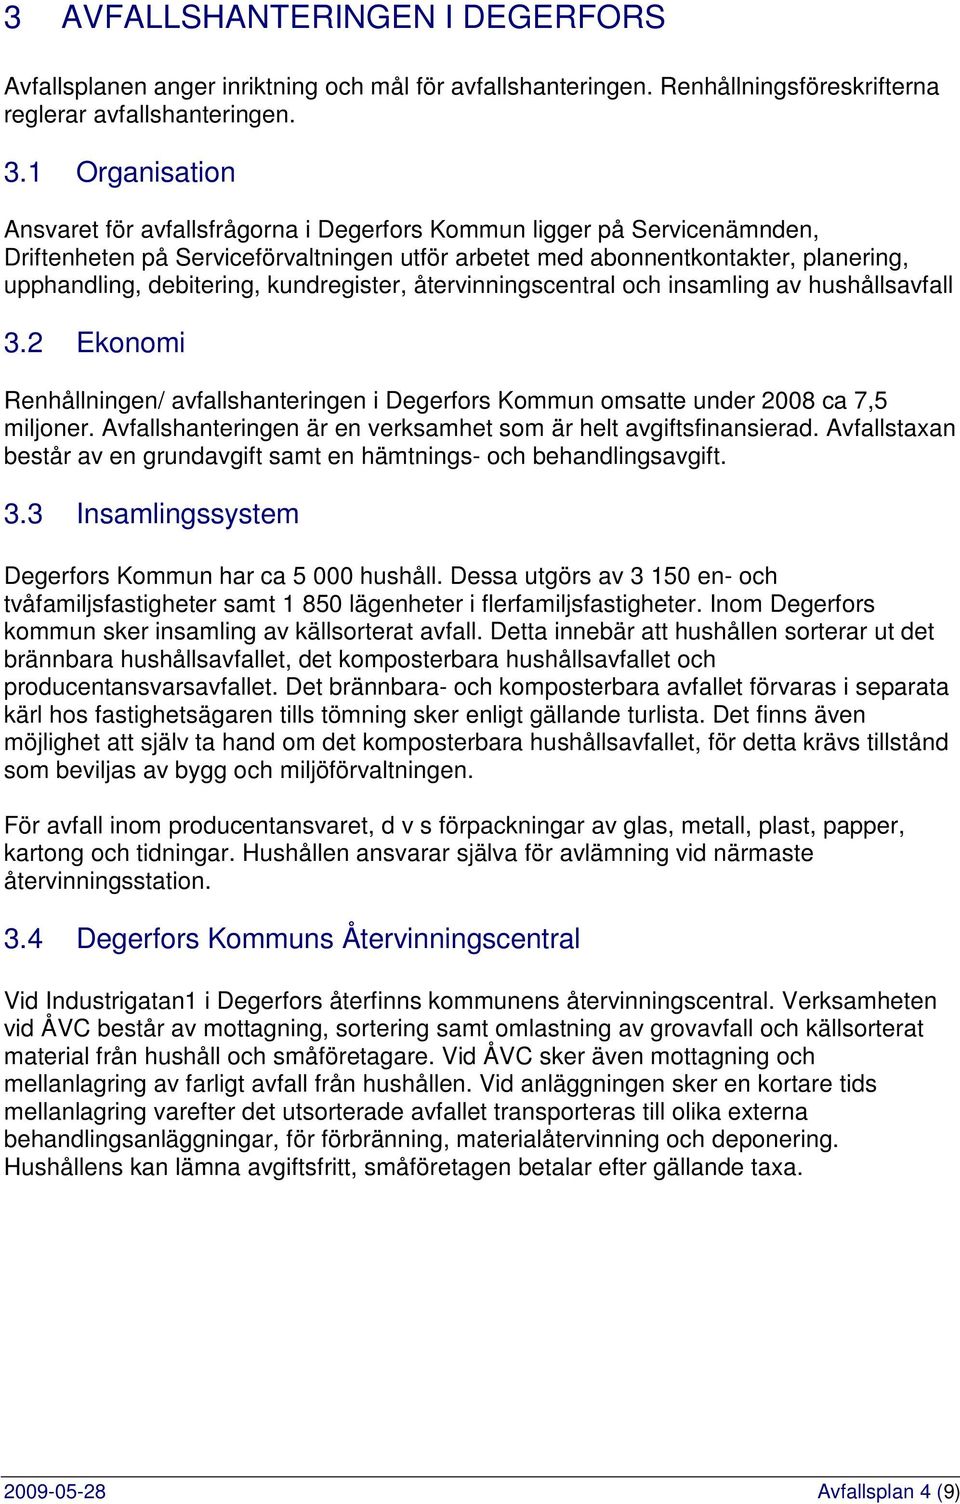 kundregister, återvinningscentral och insamling av hushållsavfall 3.2 Ekonomi Renhållningen/ avfallshanteringen i Degerfors Kommun omsatte under 2008 ca 7,5 miljoner.